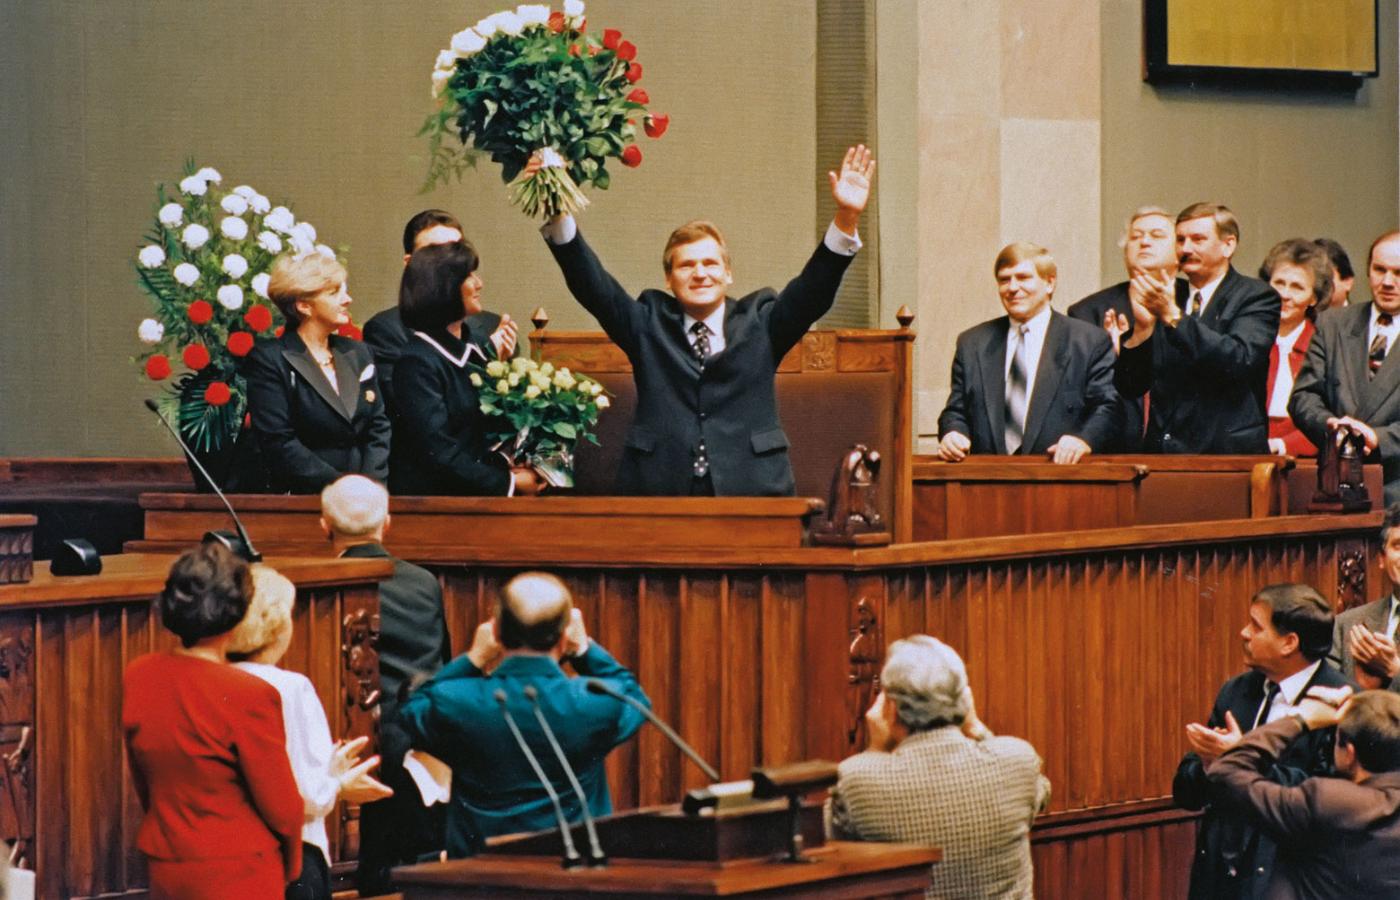 Zaprzysiężenie prezydenta Aleksandra Kwaśniewskiego, Warszawa, 23 grudnia 1995 r.